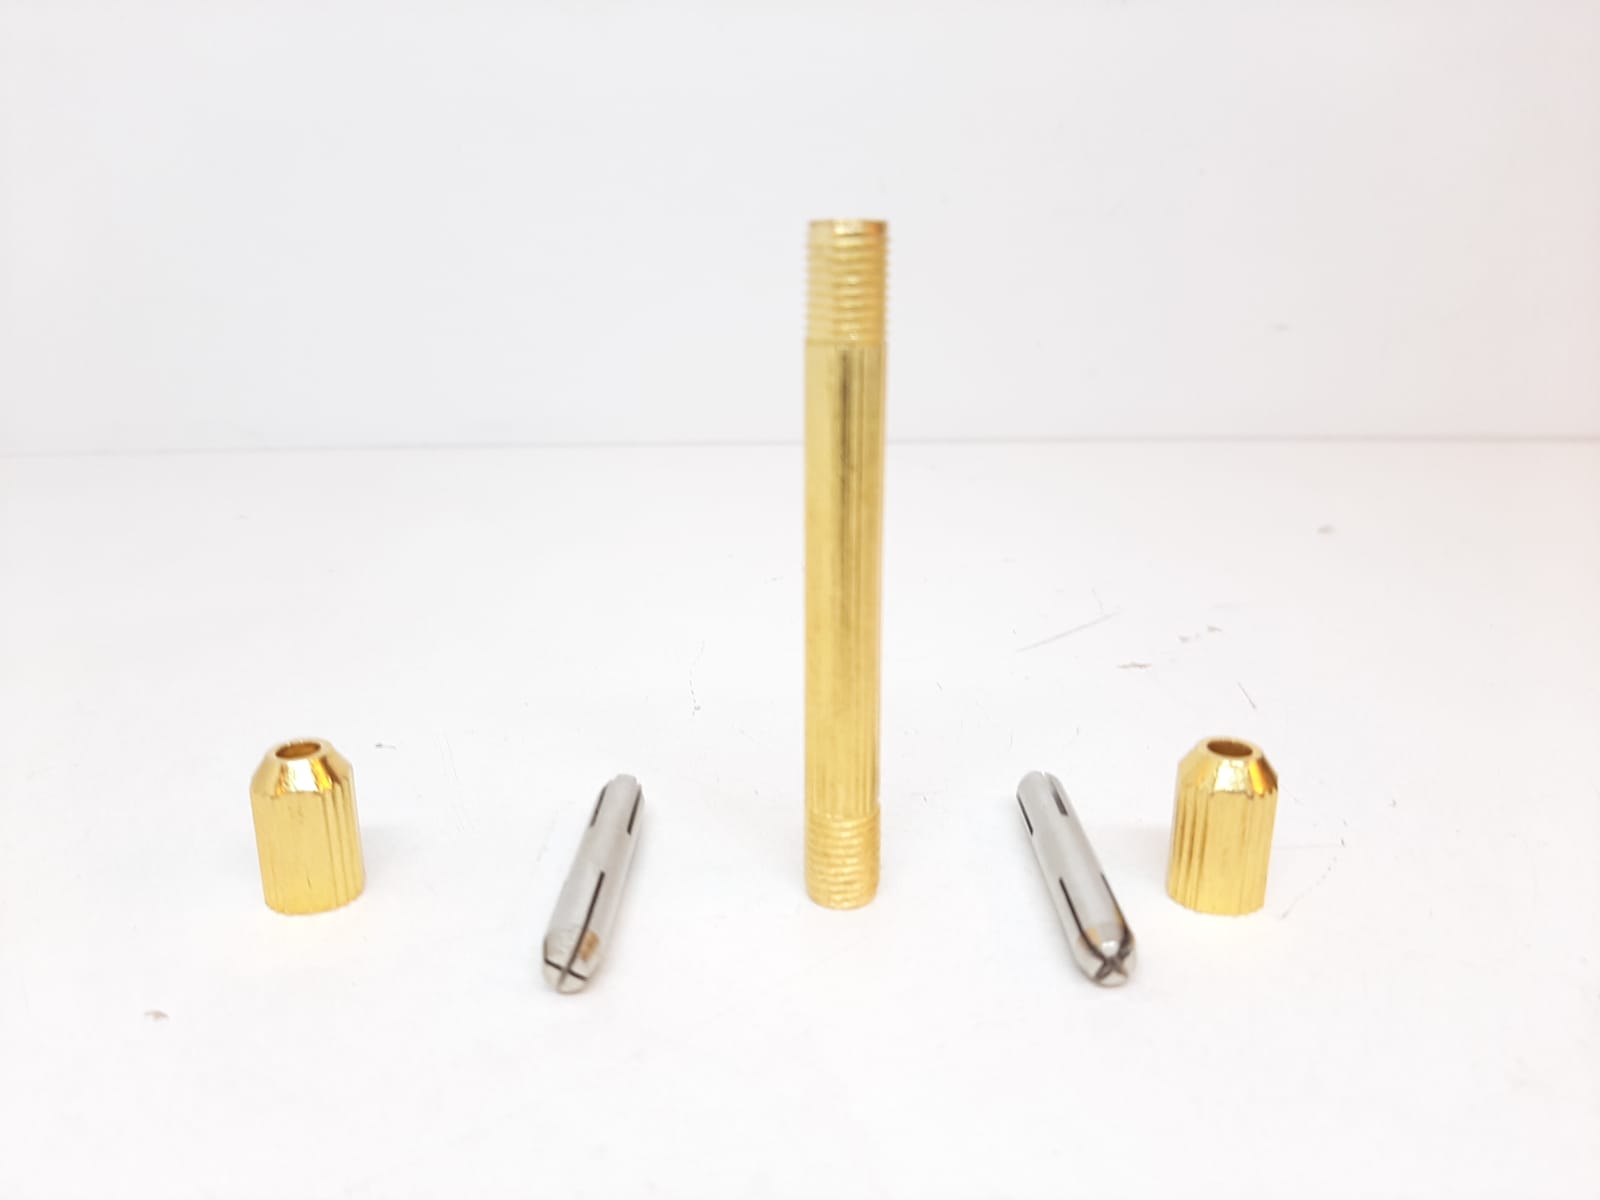 Nål / Pin Vise / Borr / Pillare / Håltagare (Klocka/urmakeri verktyg)